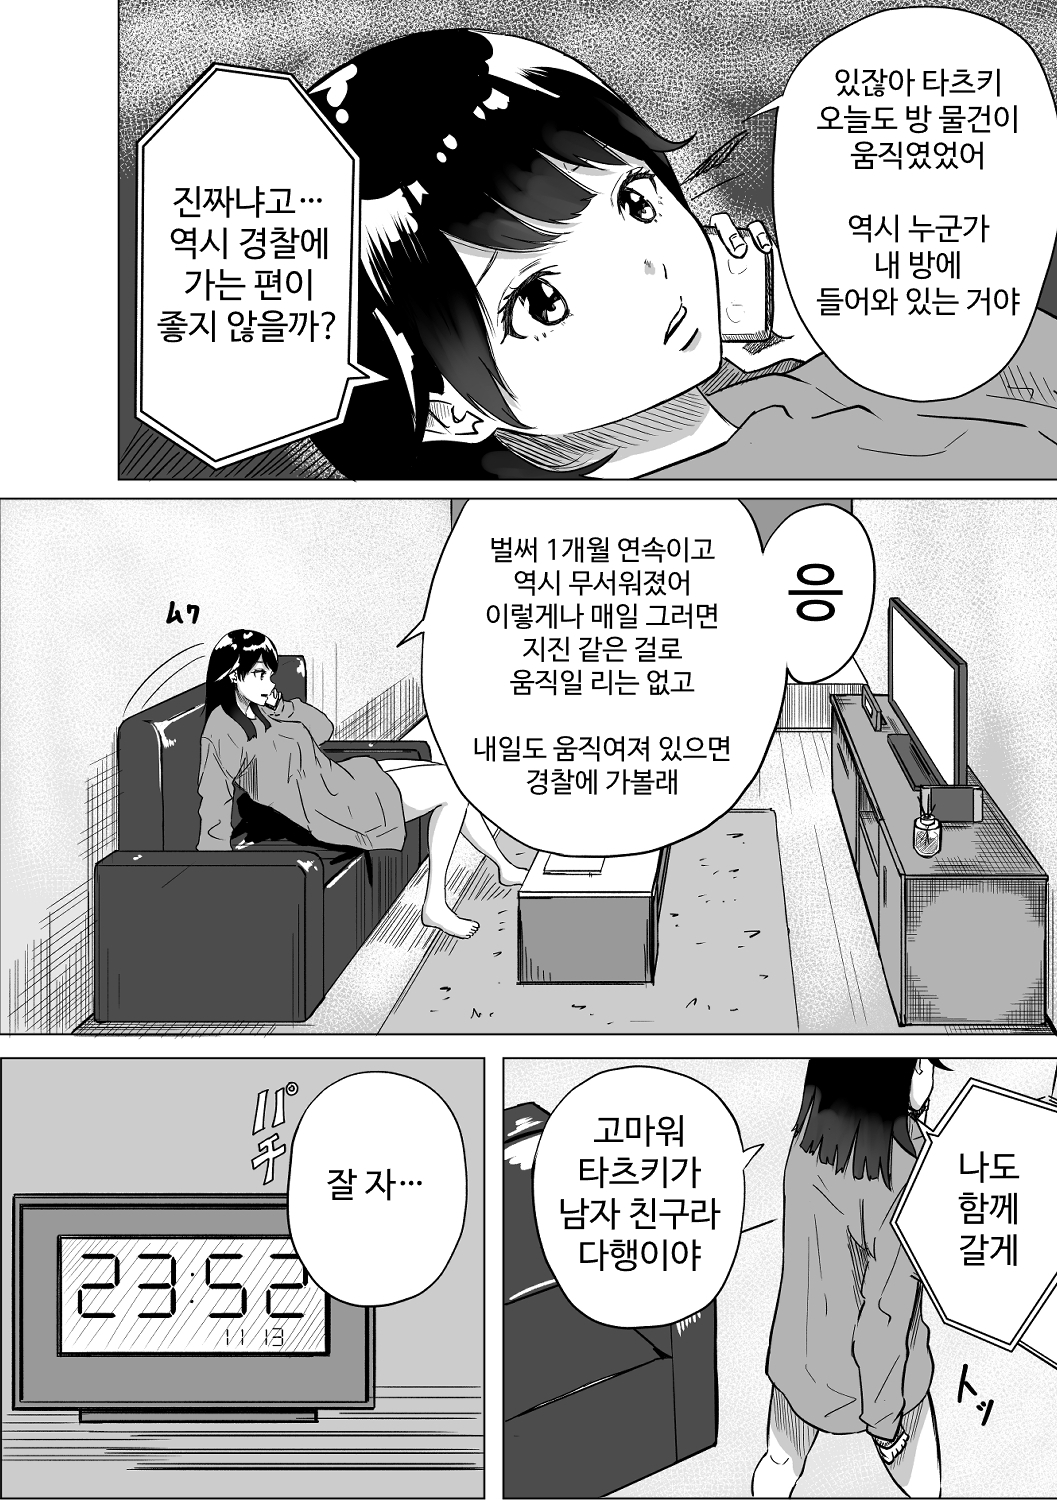 【韓国語版】ソファを買ったら中に変態が入っていてひどいことをされた話